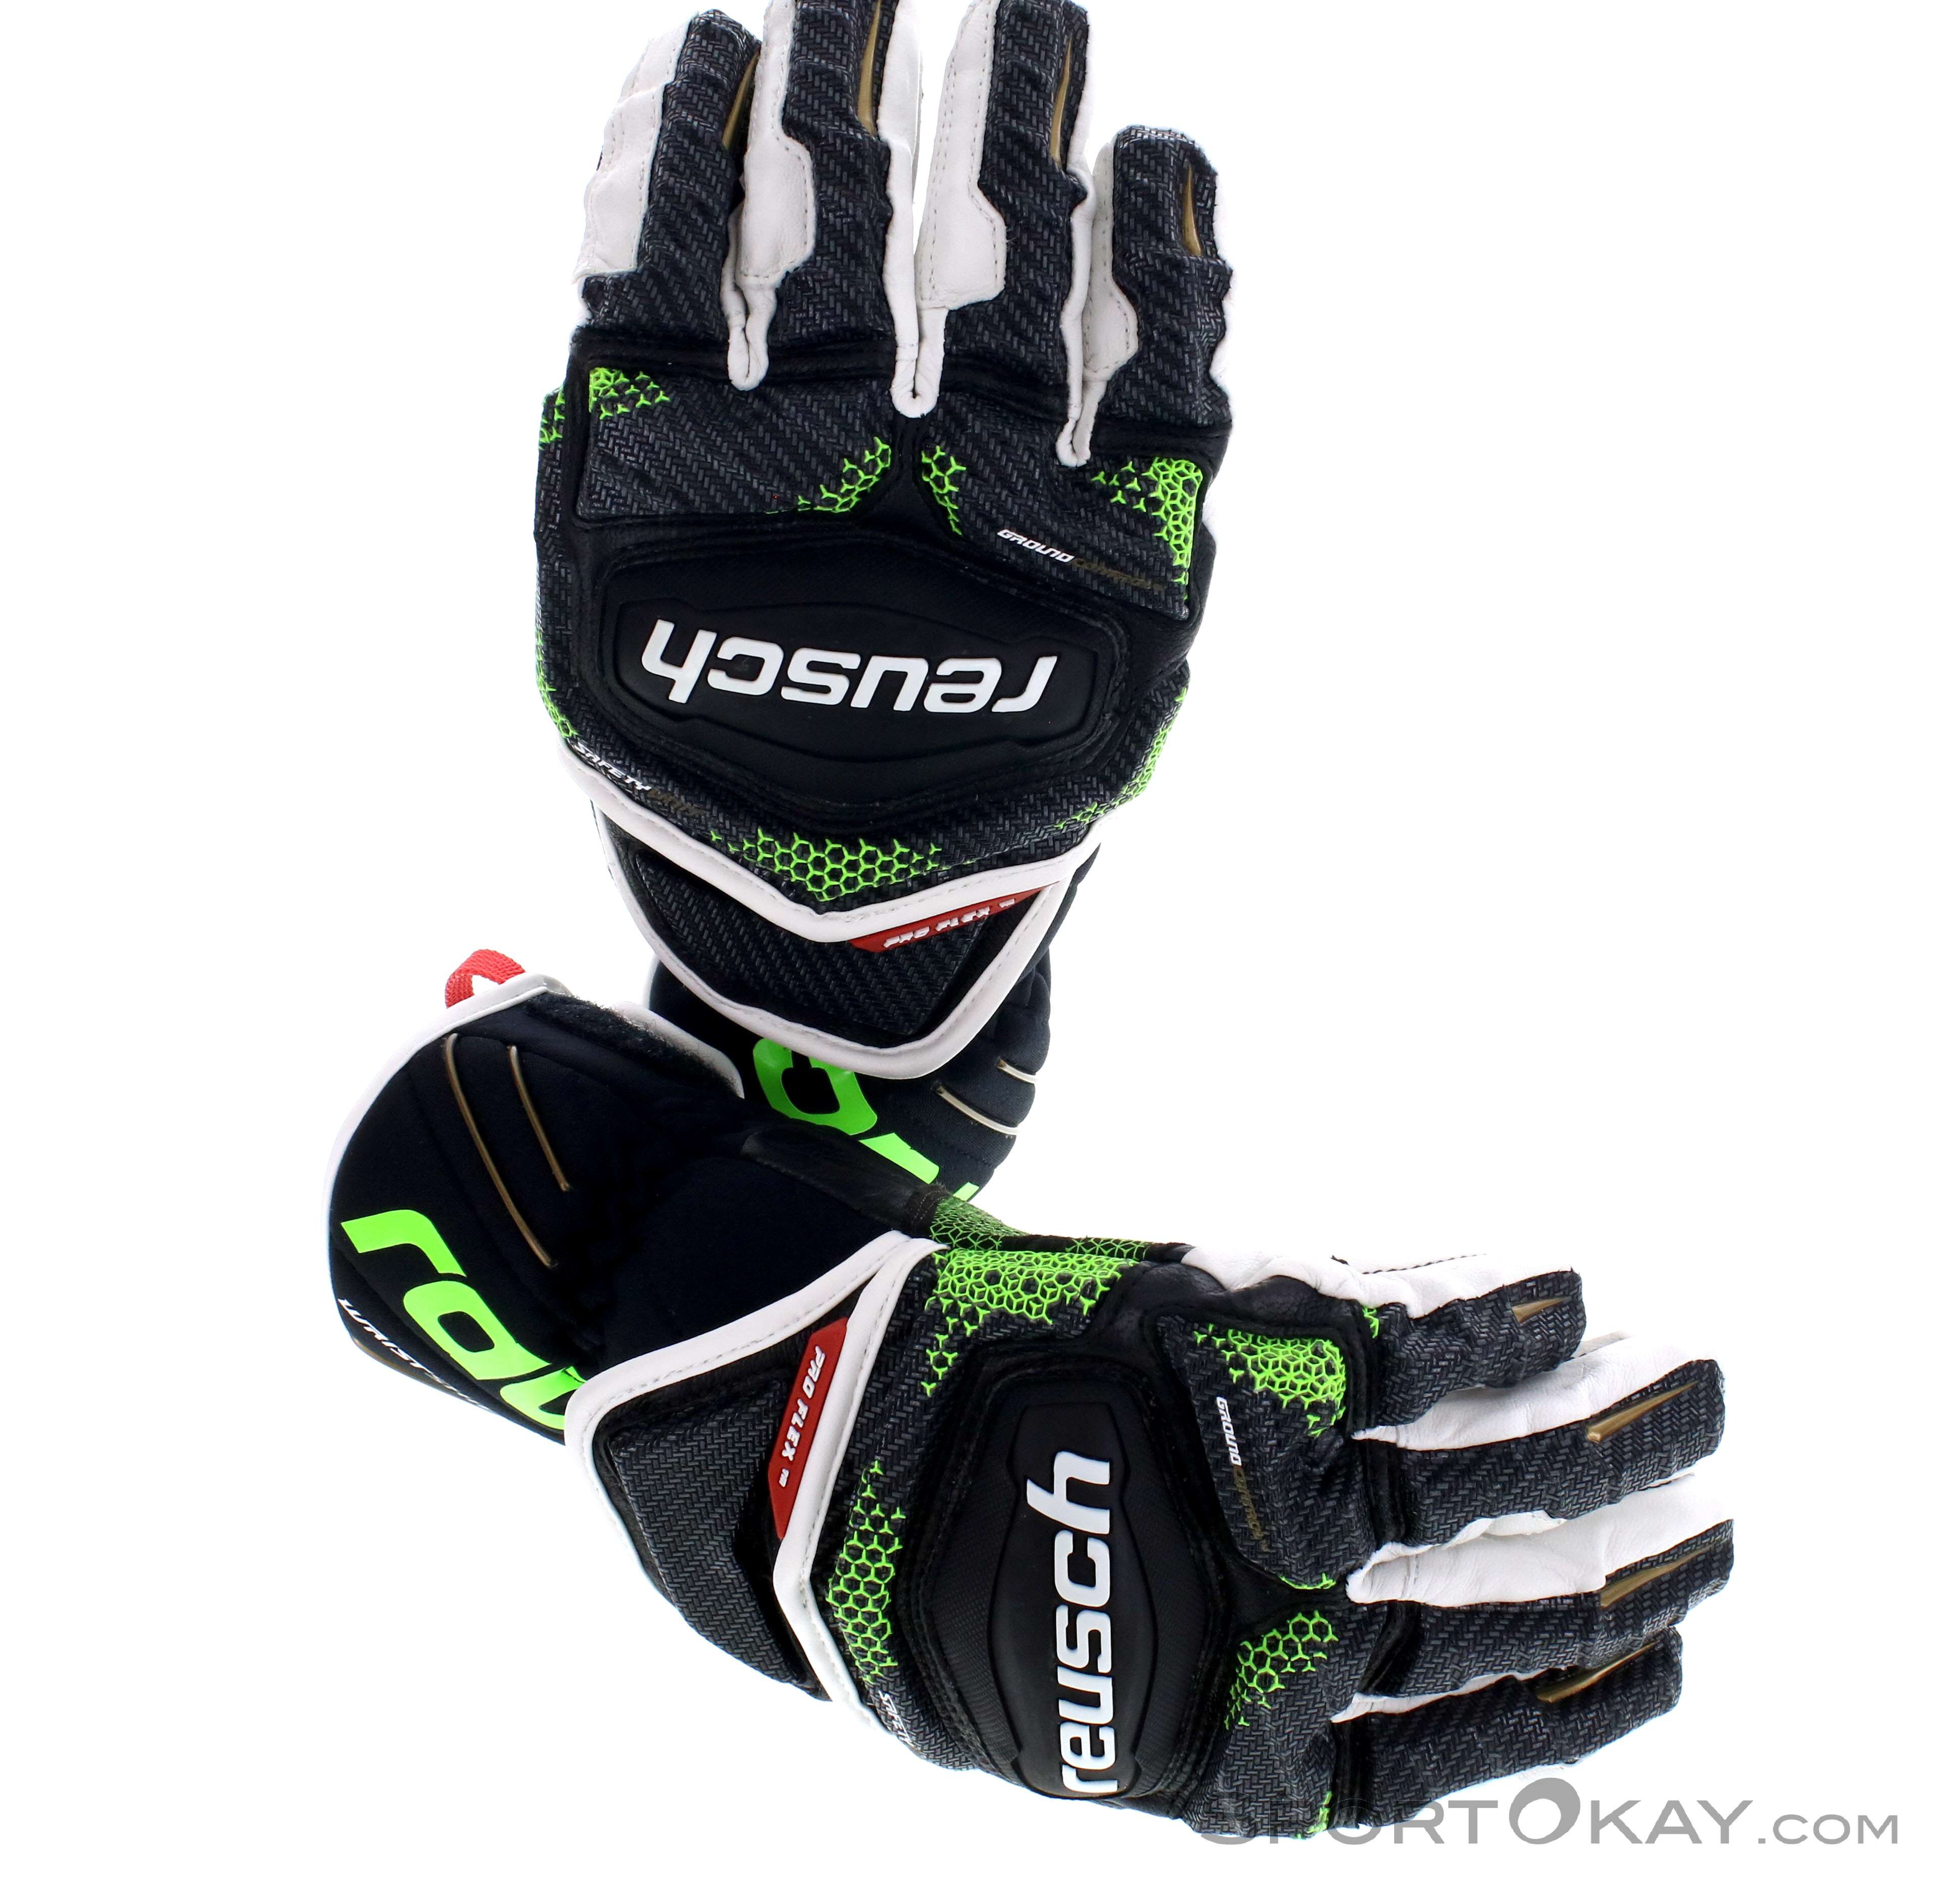 Reusch Race-Tec 18 GS Gloves - Ski Gloves - Ski Clothing - Ski 